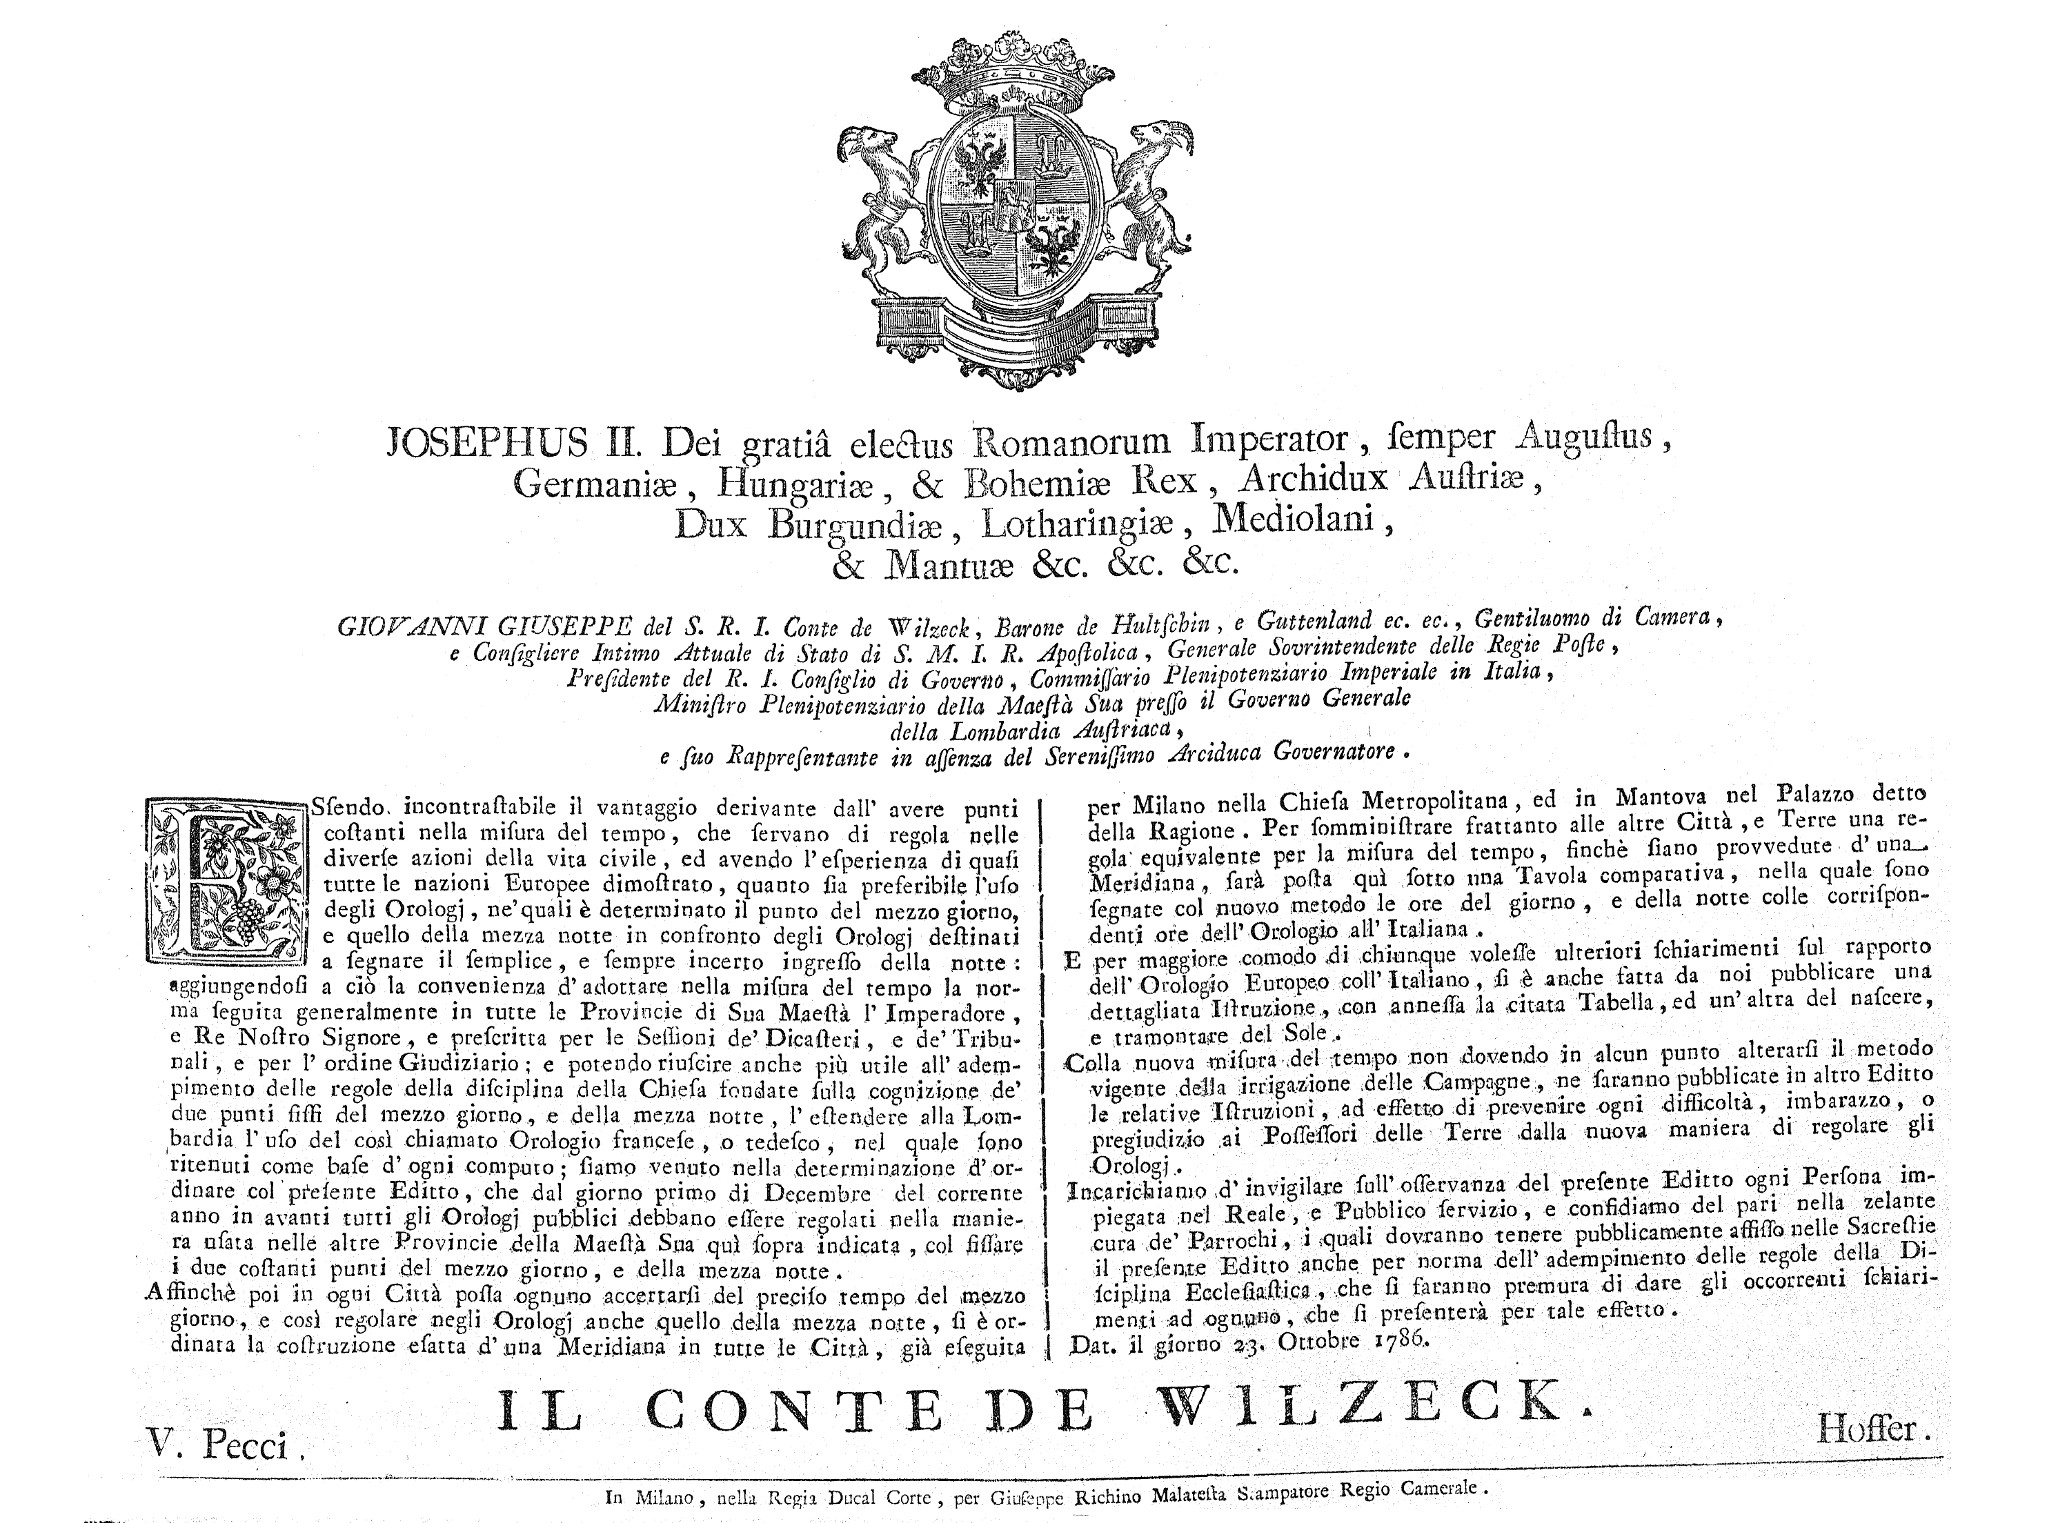 Il decreto imperiale del 23 ottobre 1786